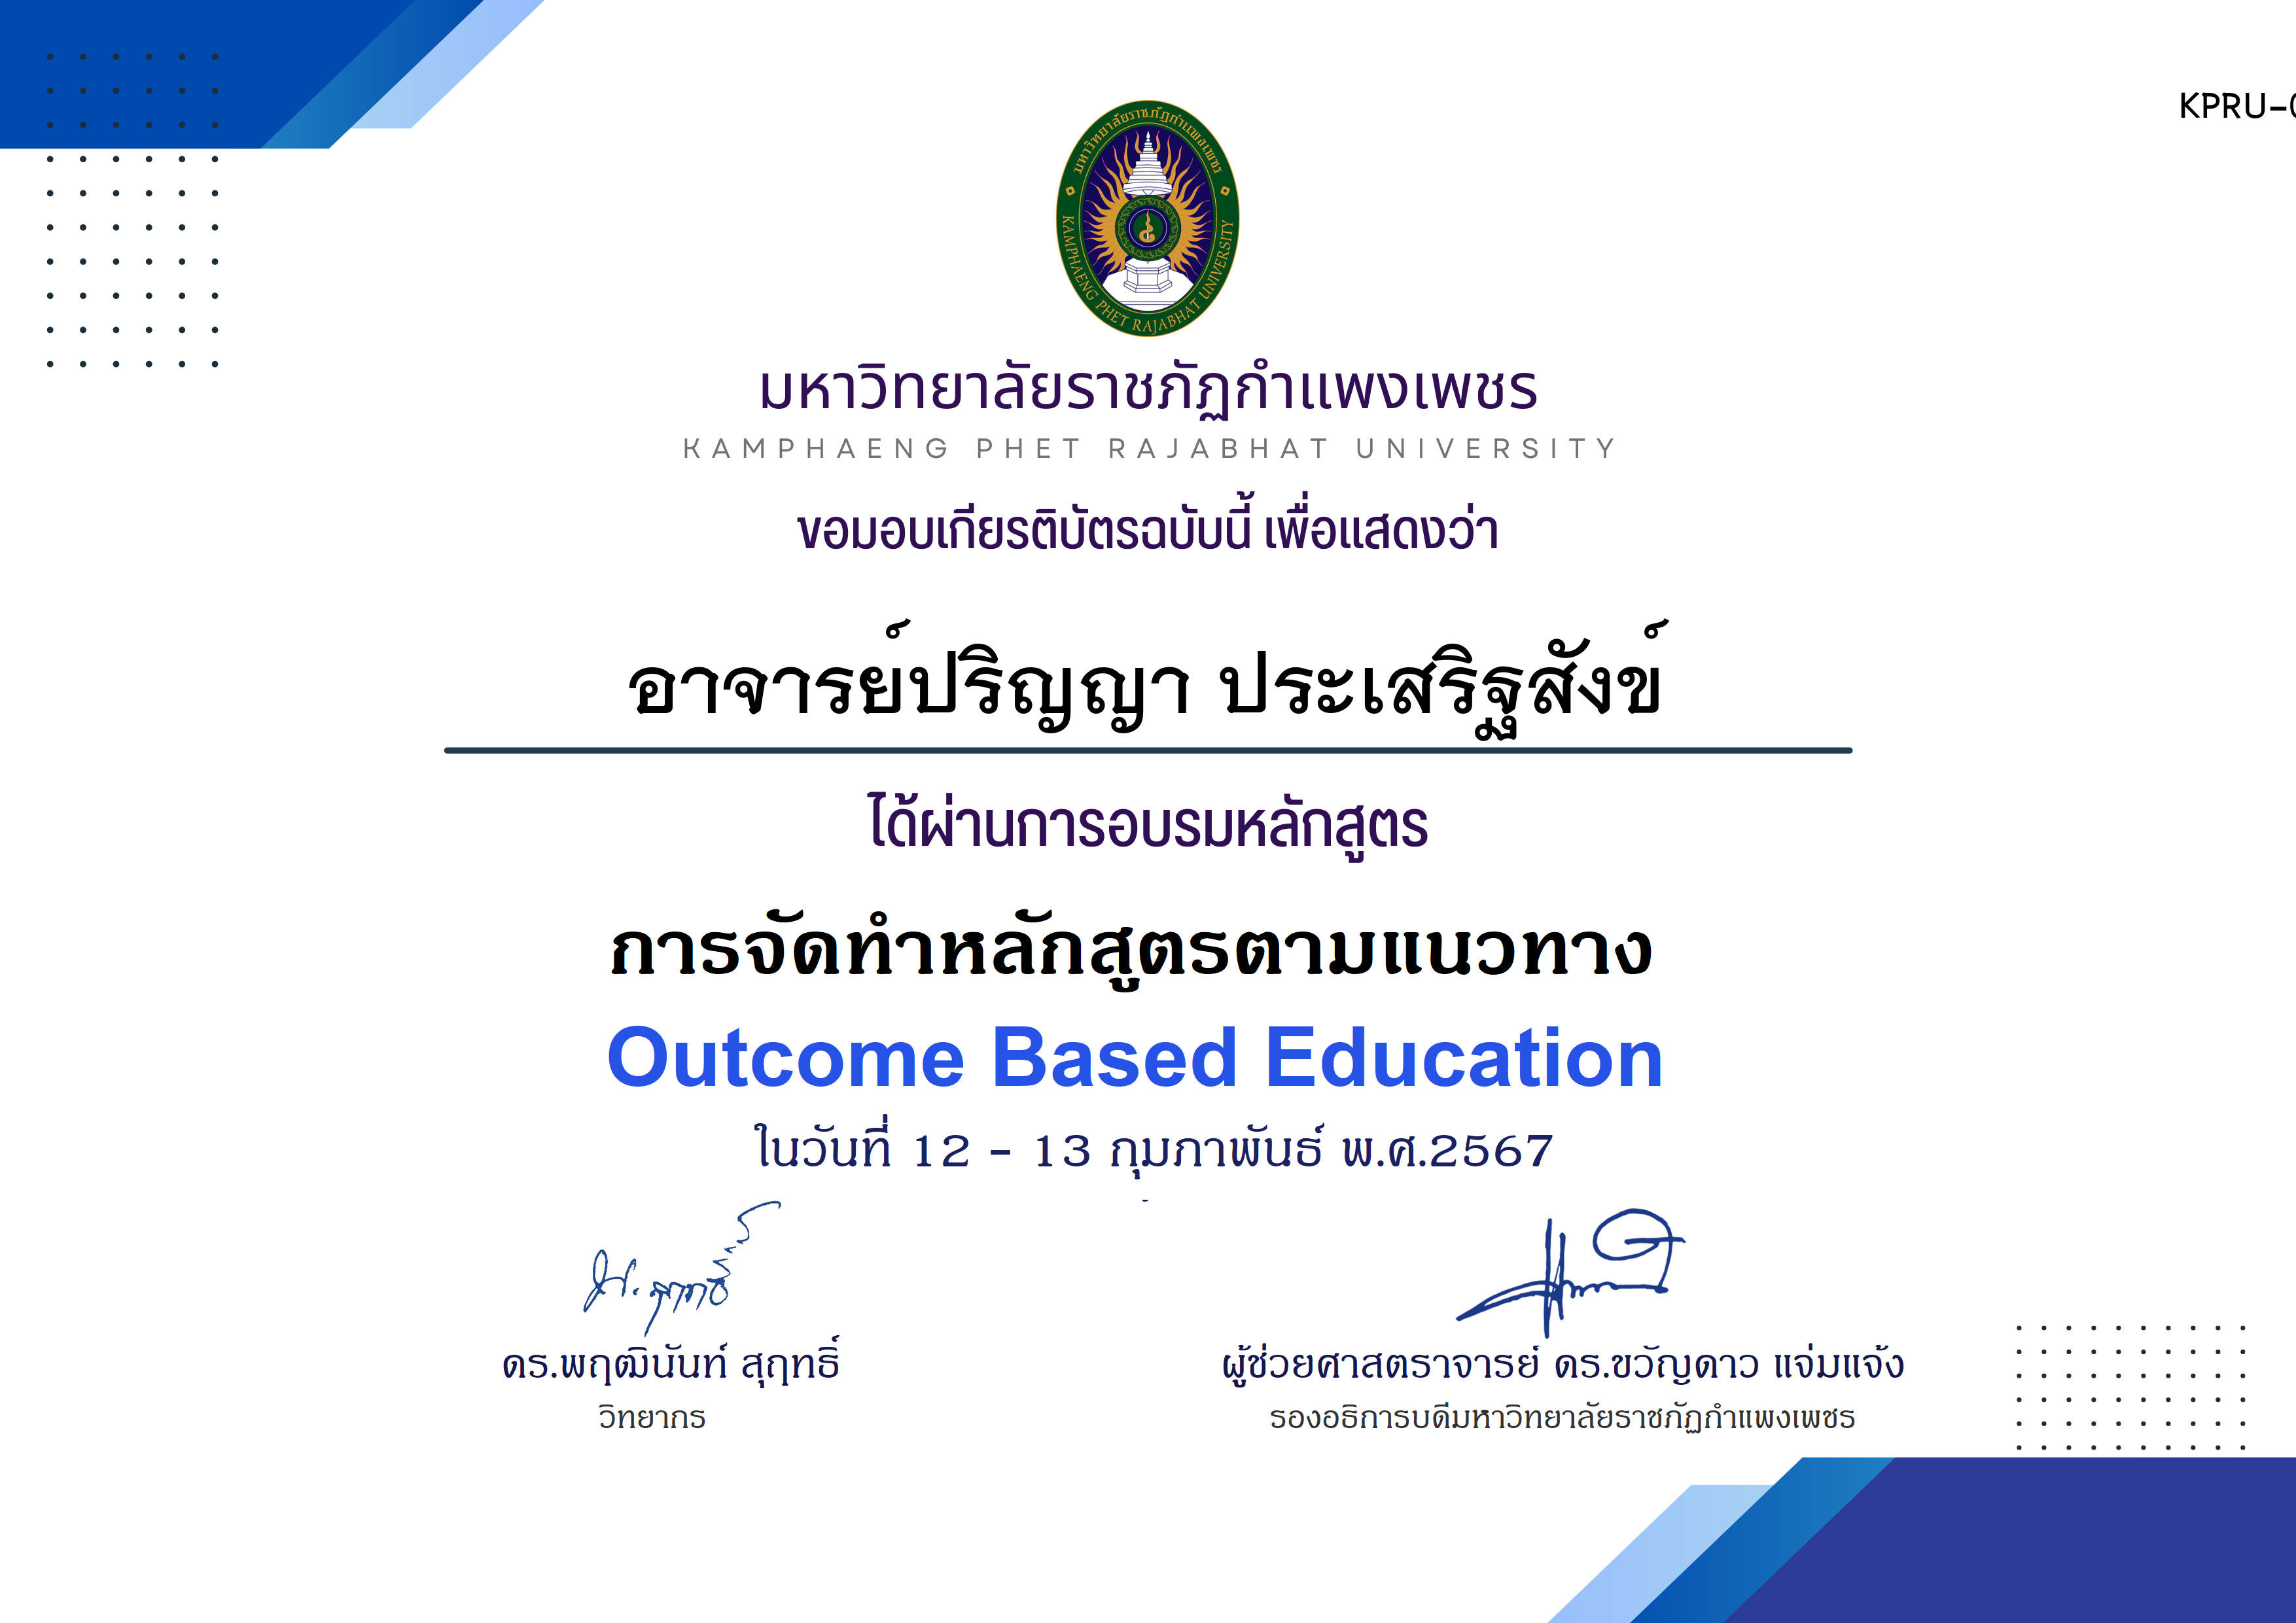 เกียรติบัตร โครงการอบรม การจัดทำหลักสูตรตามแนวทาง Outcome Based Education ของ อาจารย์ปริญญา ประเสริฐสังข์